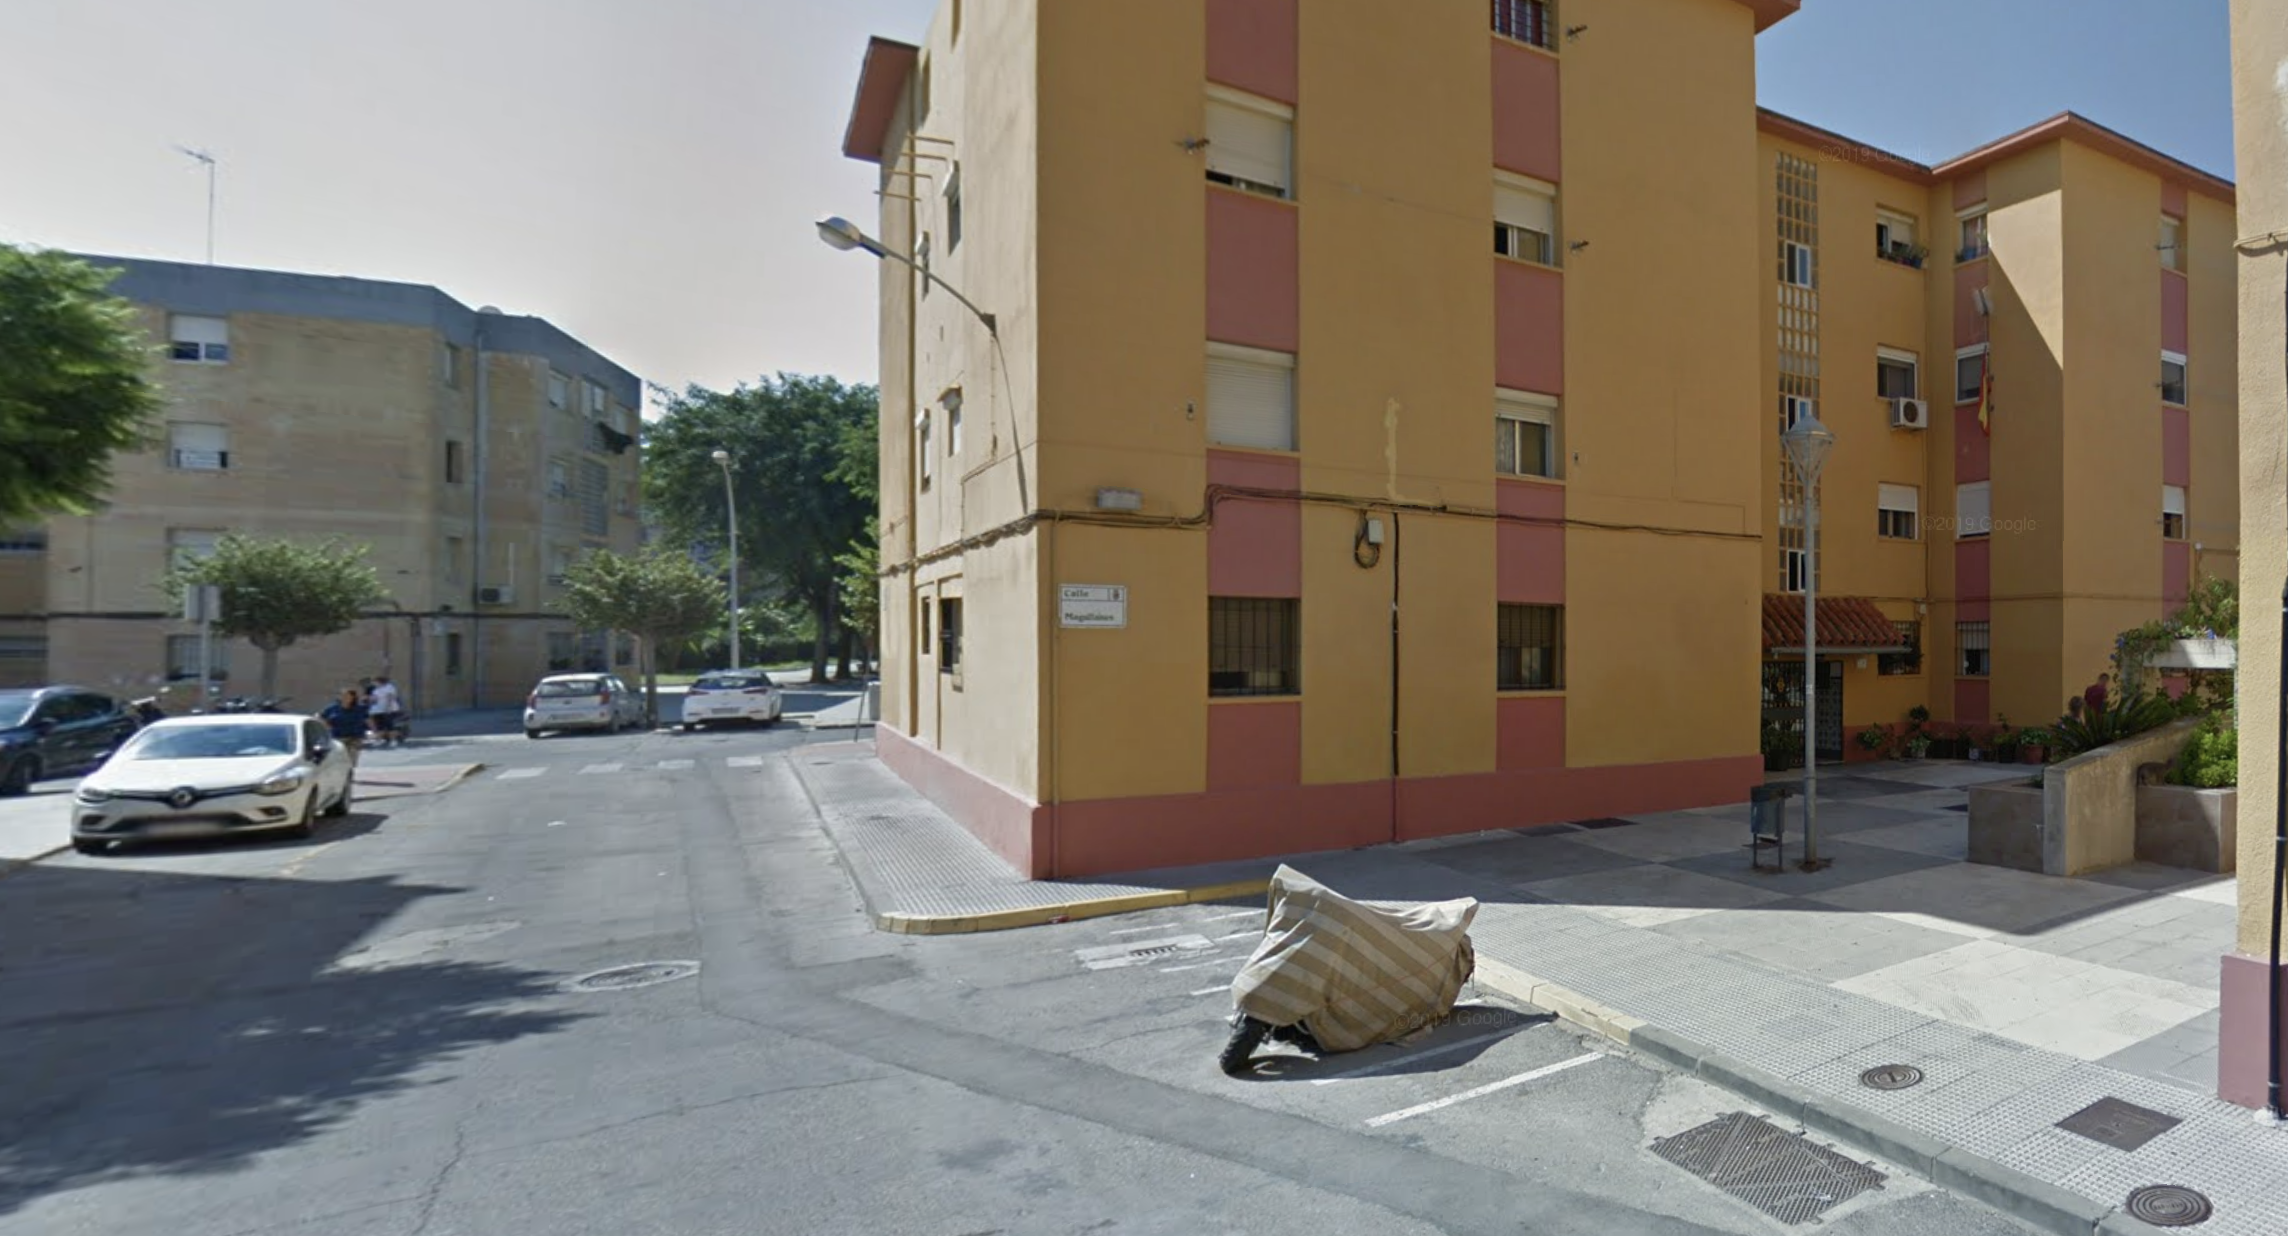 Secuestrado durante siete horas en Rota por un ajuste de cuentas. Calle Magallanes, en una imagen de Google Maps.